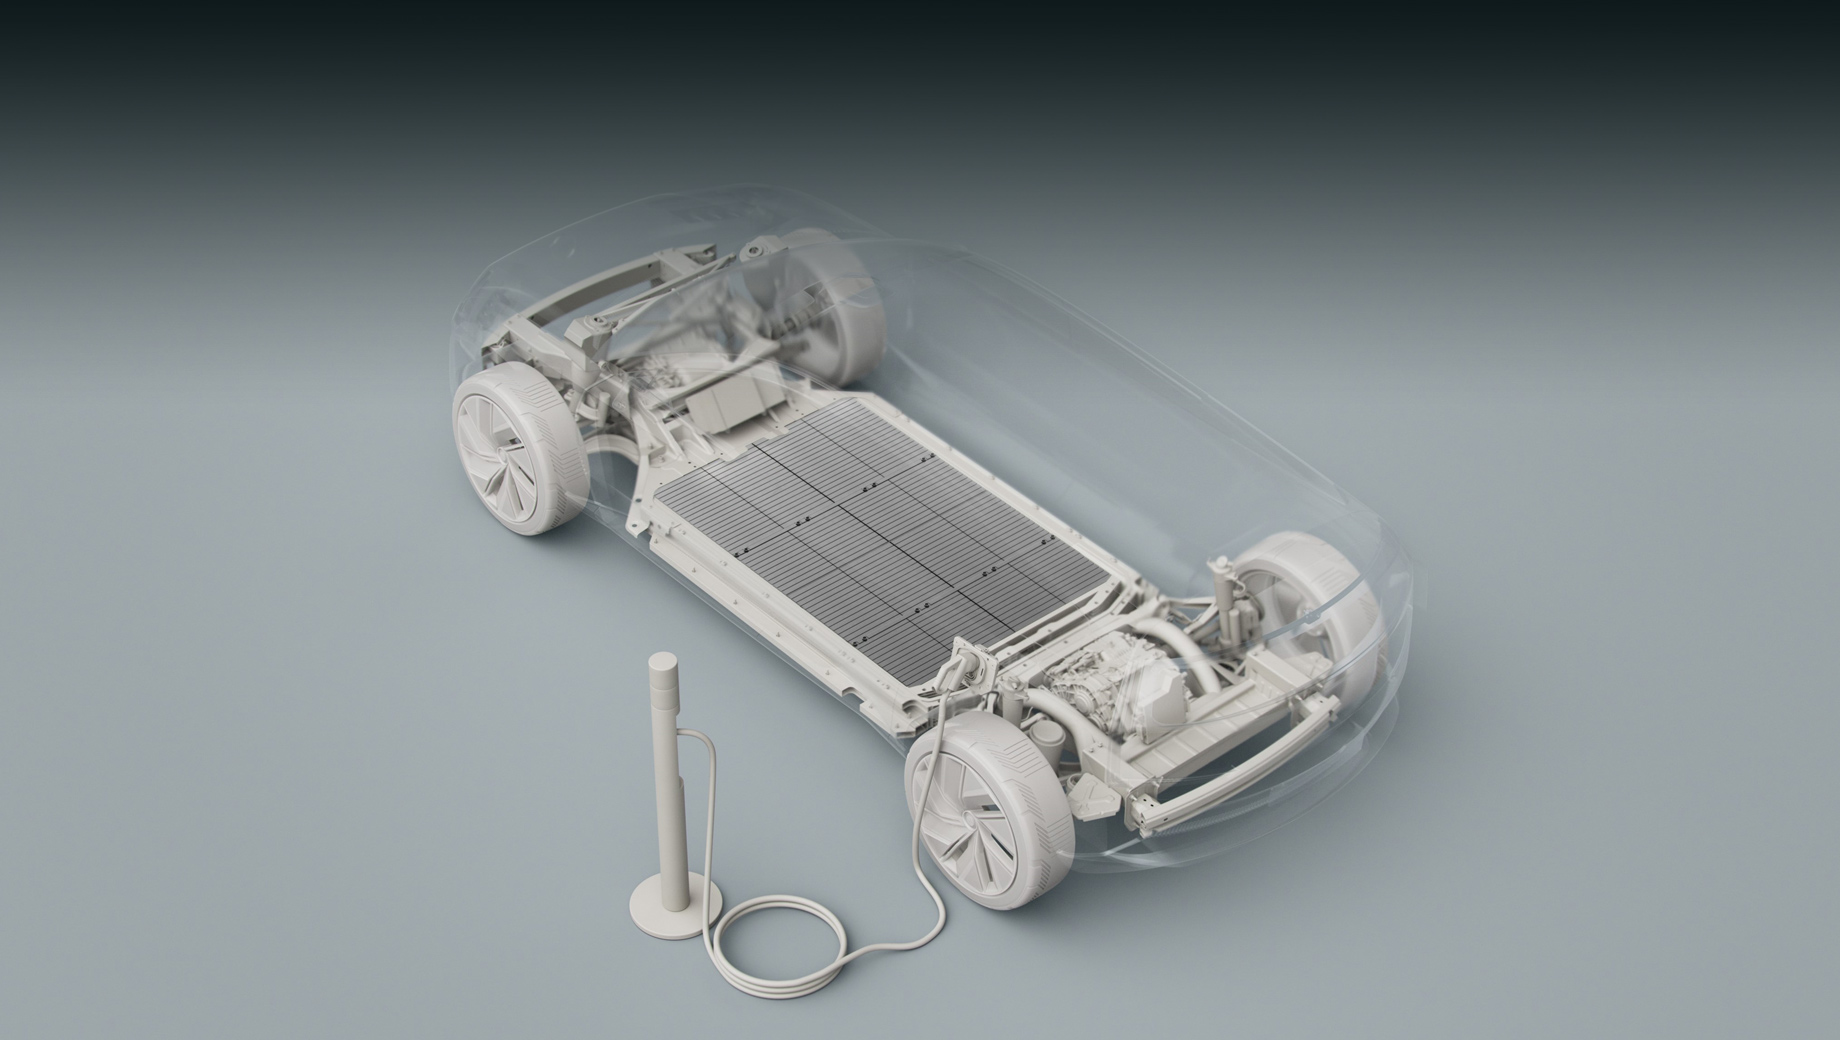 Volvo xc60. Перспективные Volvo, судя по эскизу, получат платформу, сразу оптимизированную под электропривод: посмотрите на огромную плоскую батарею и тяговые модули (электромотор плюс редуктор) на каждой из осей.